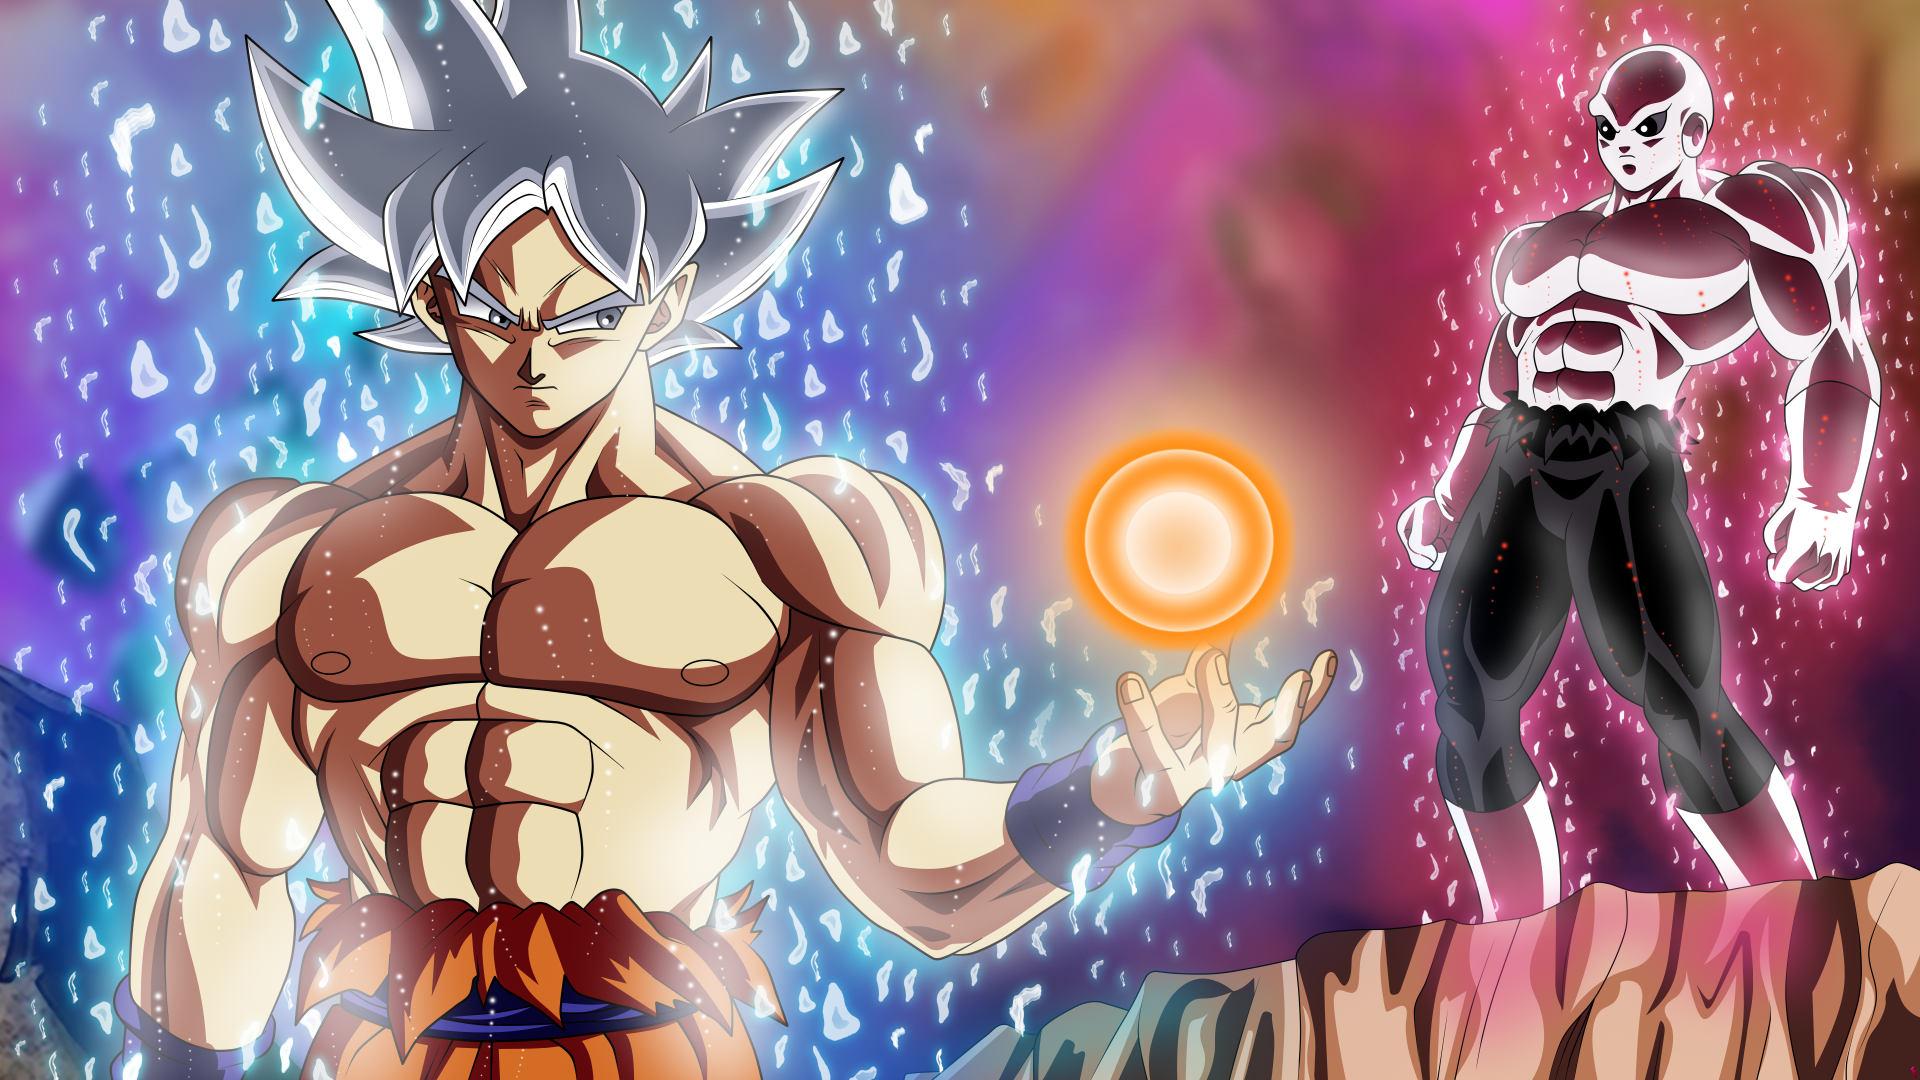 Goku VS Jiren =) by Goku_Migatte_No_Gokui018